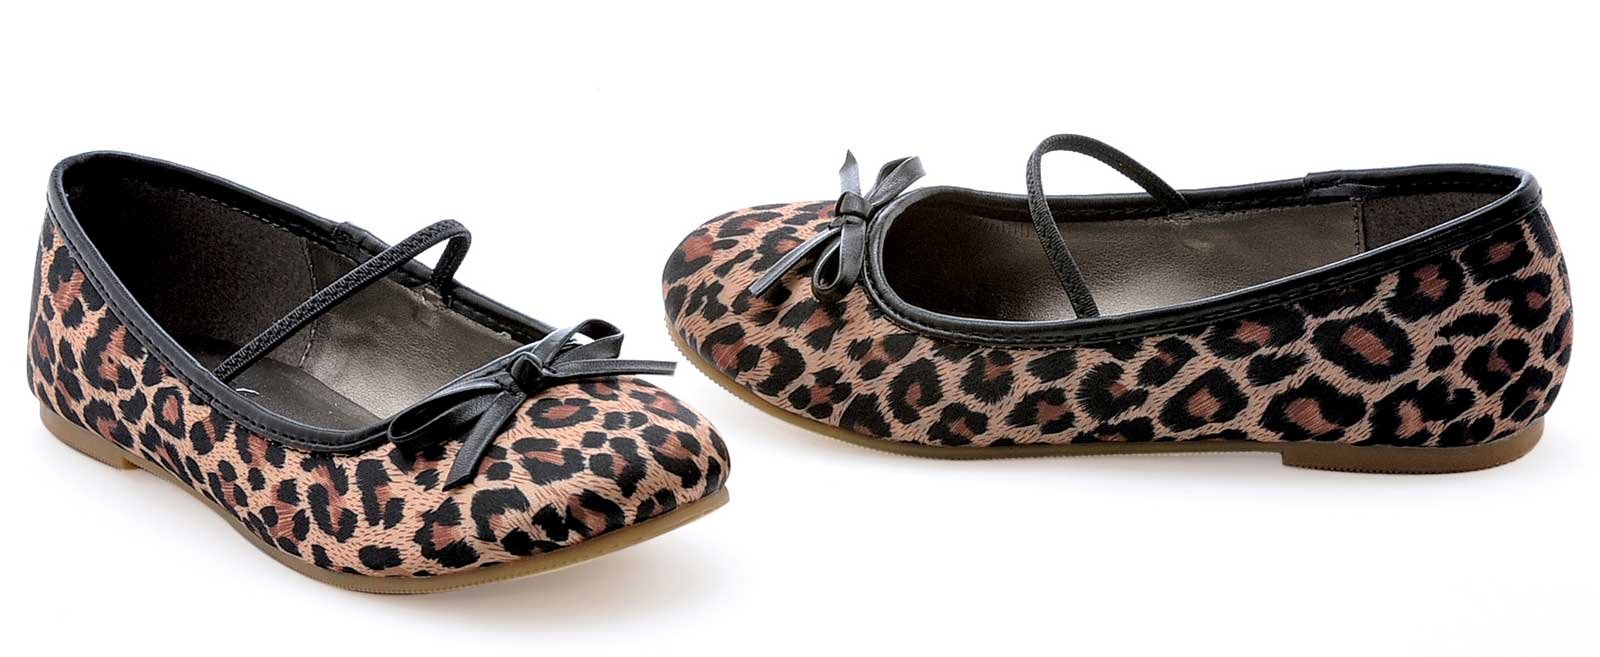 Leopard Ballet Flat Child Shoes